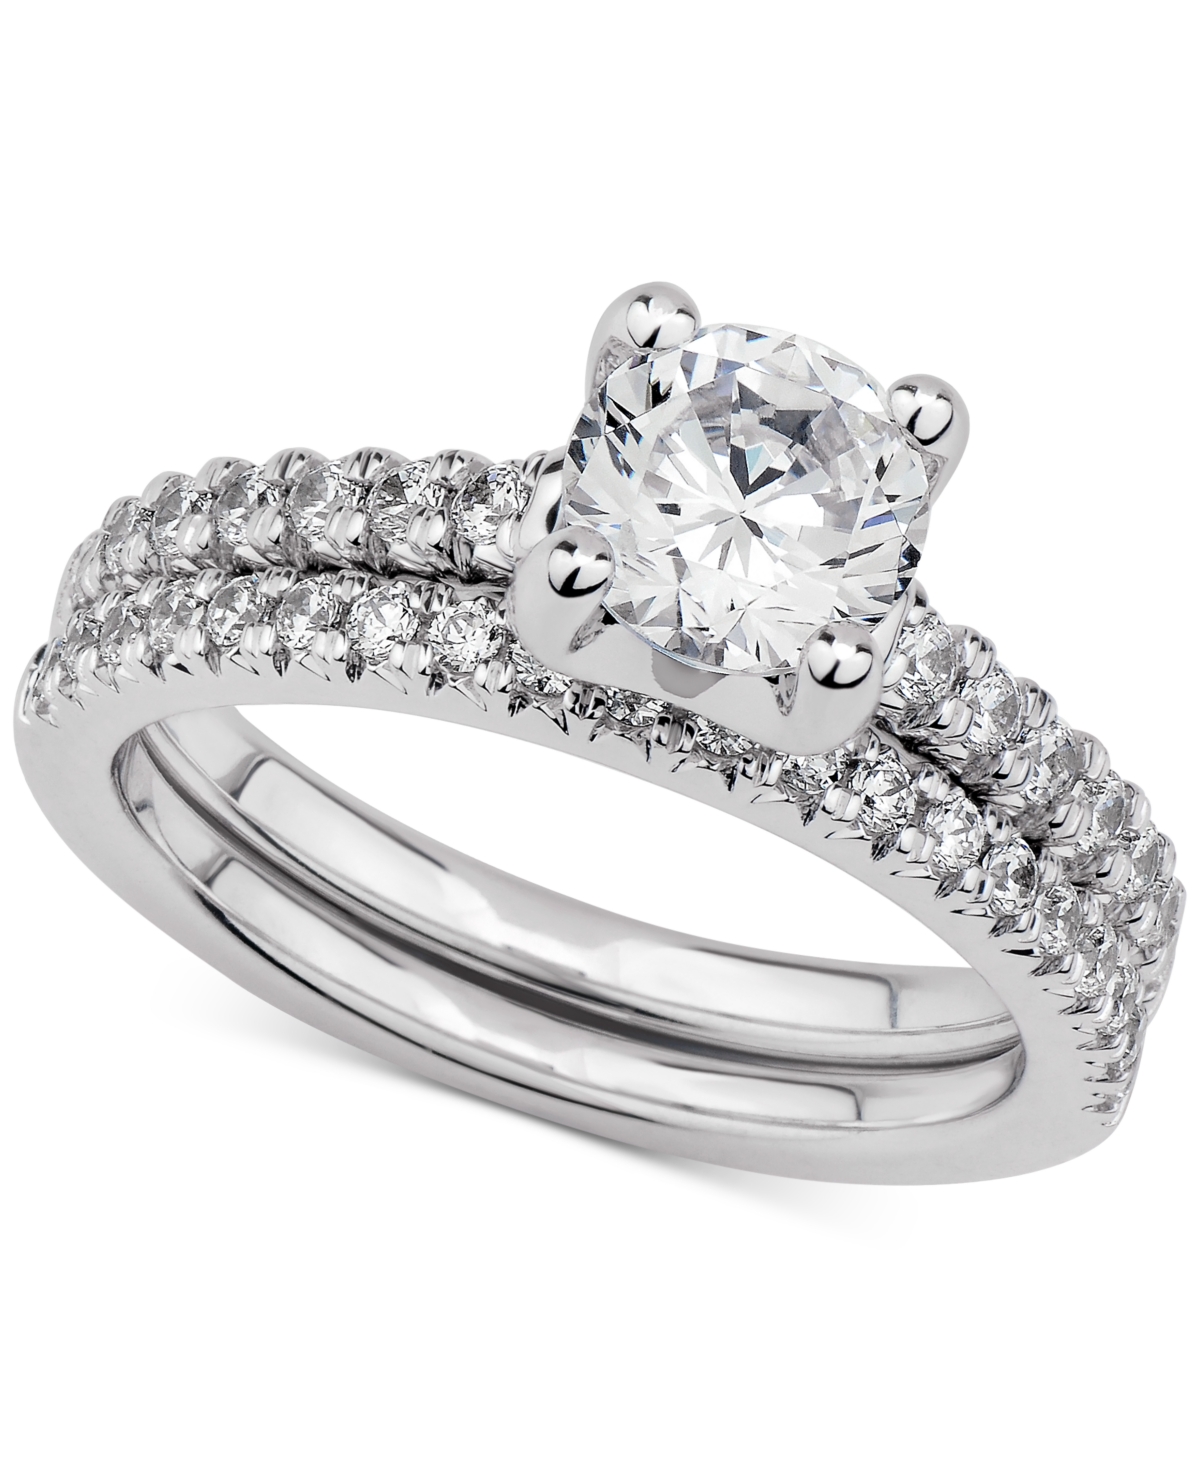 Gia Certified Diamond Bridal Set (1-1/2 ct. t.w.) in 14k White Gold - White Gold